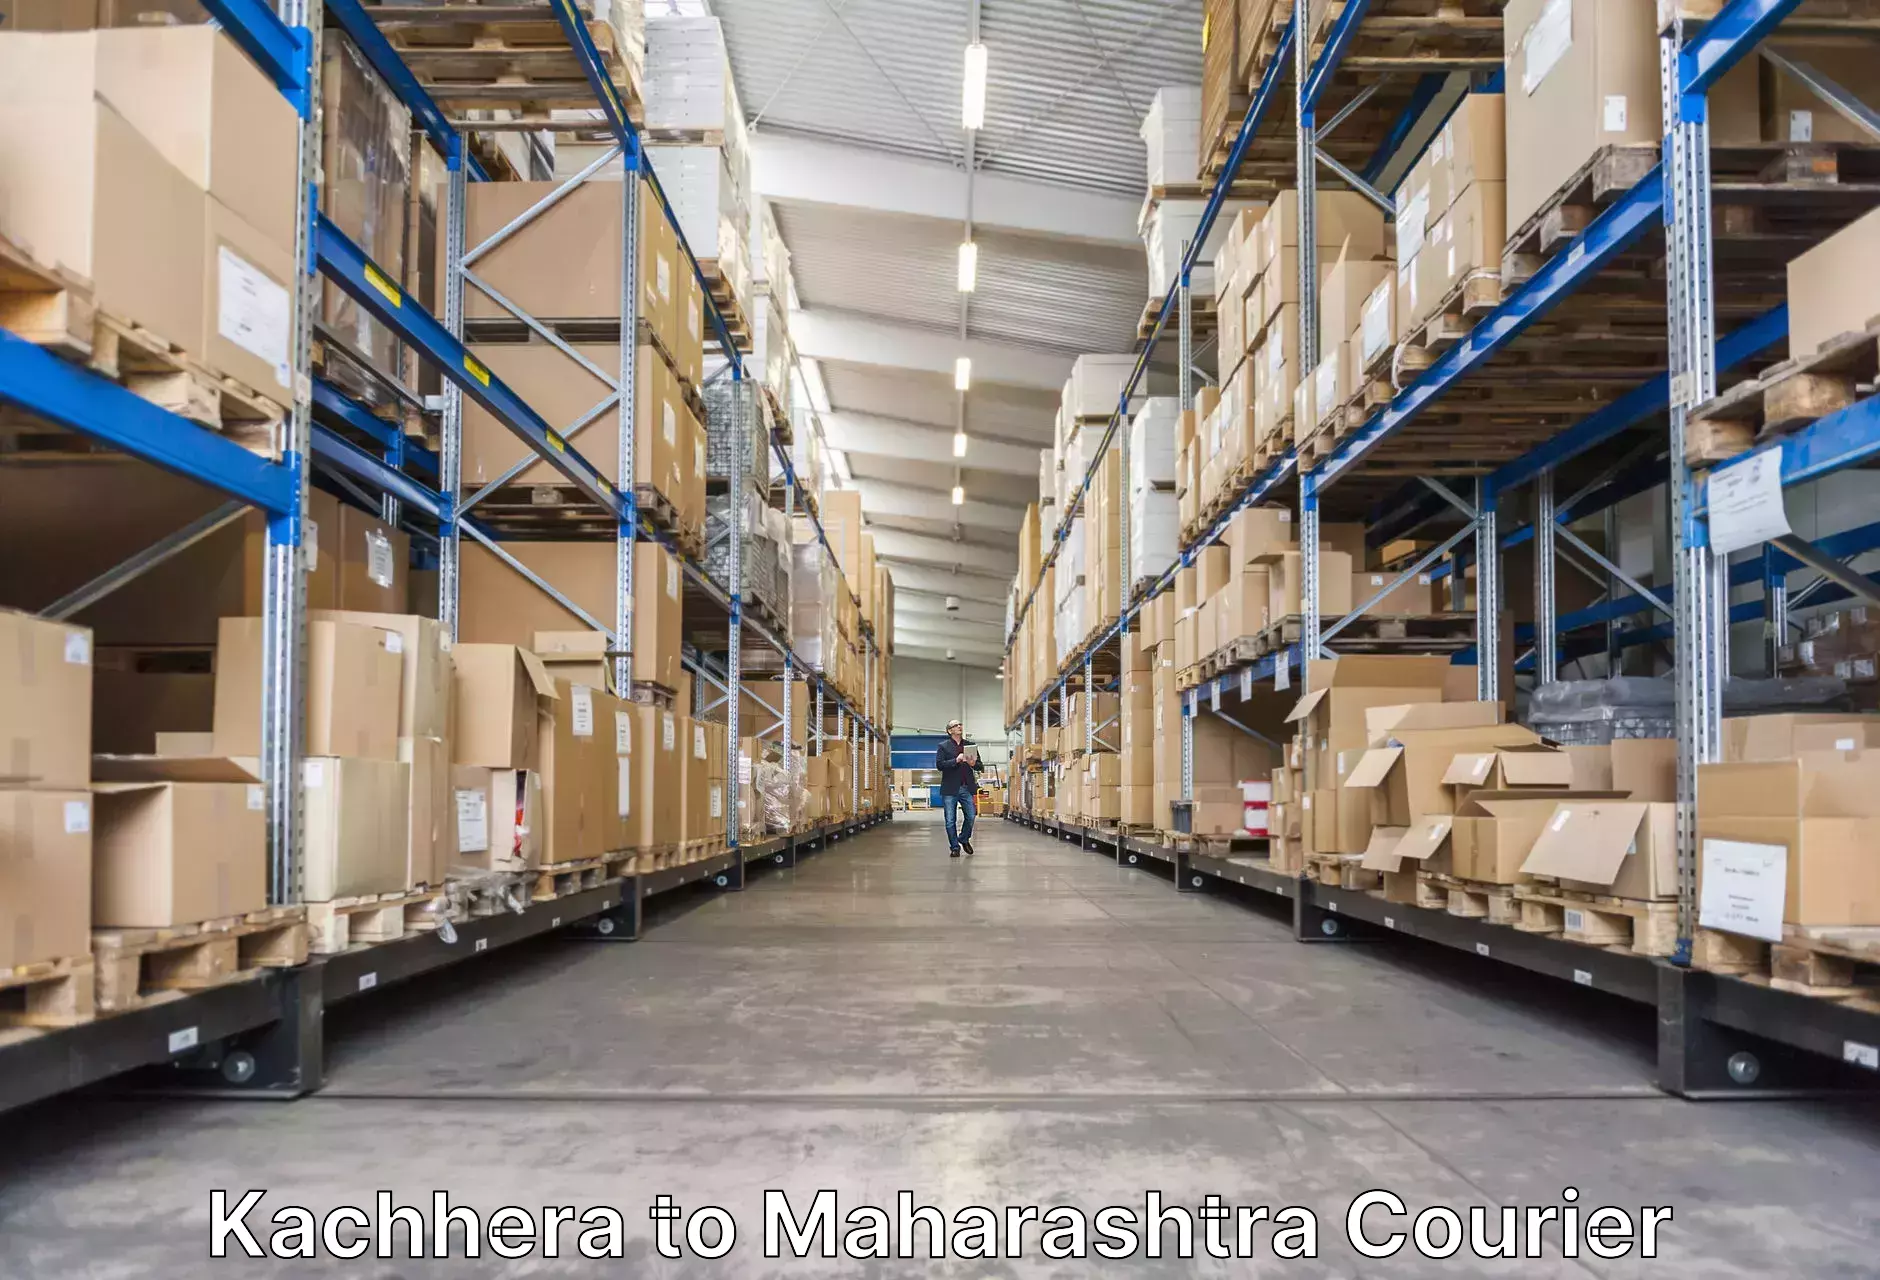 Baggage shipping service Kachhera to Maharashtra